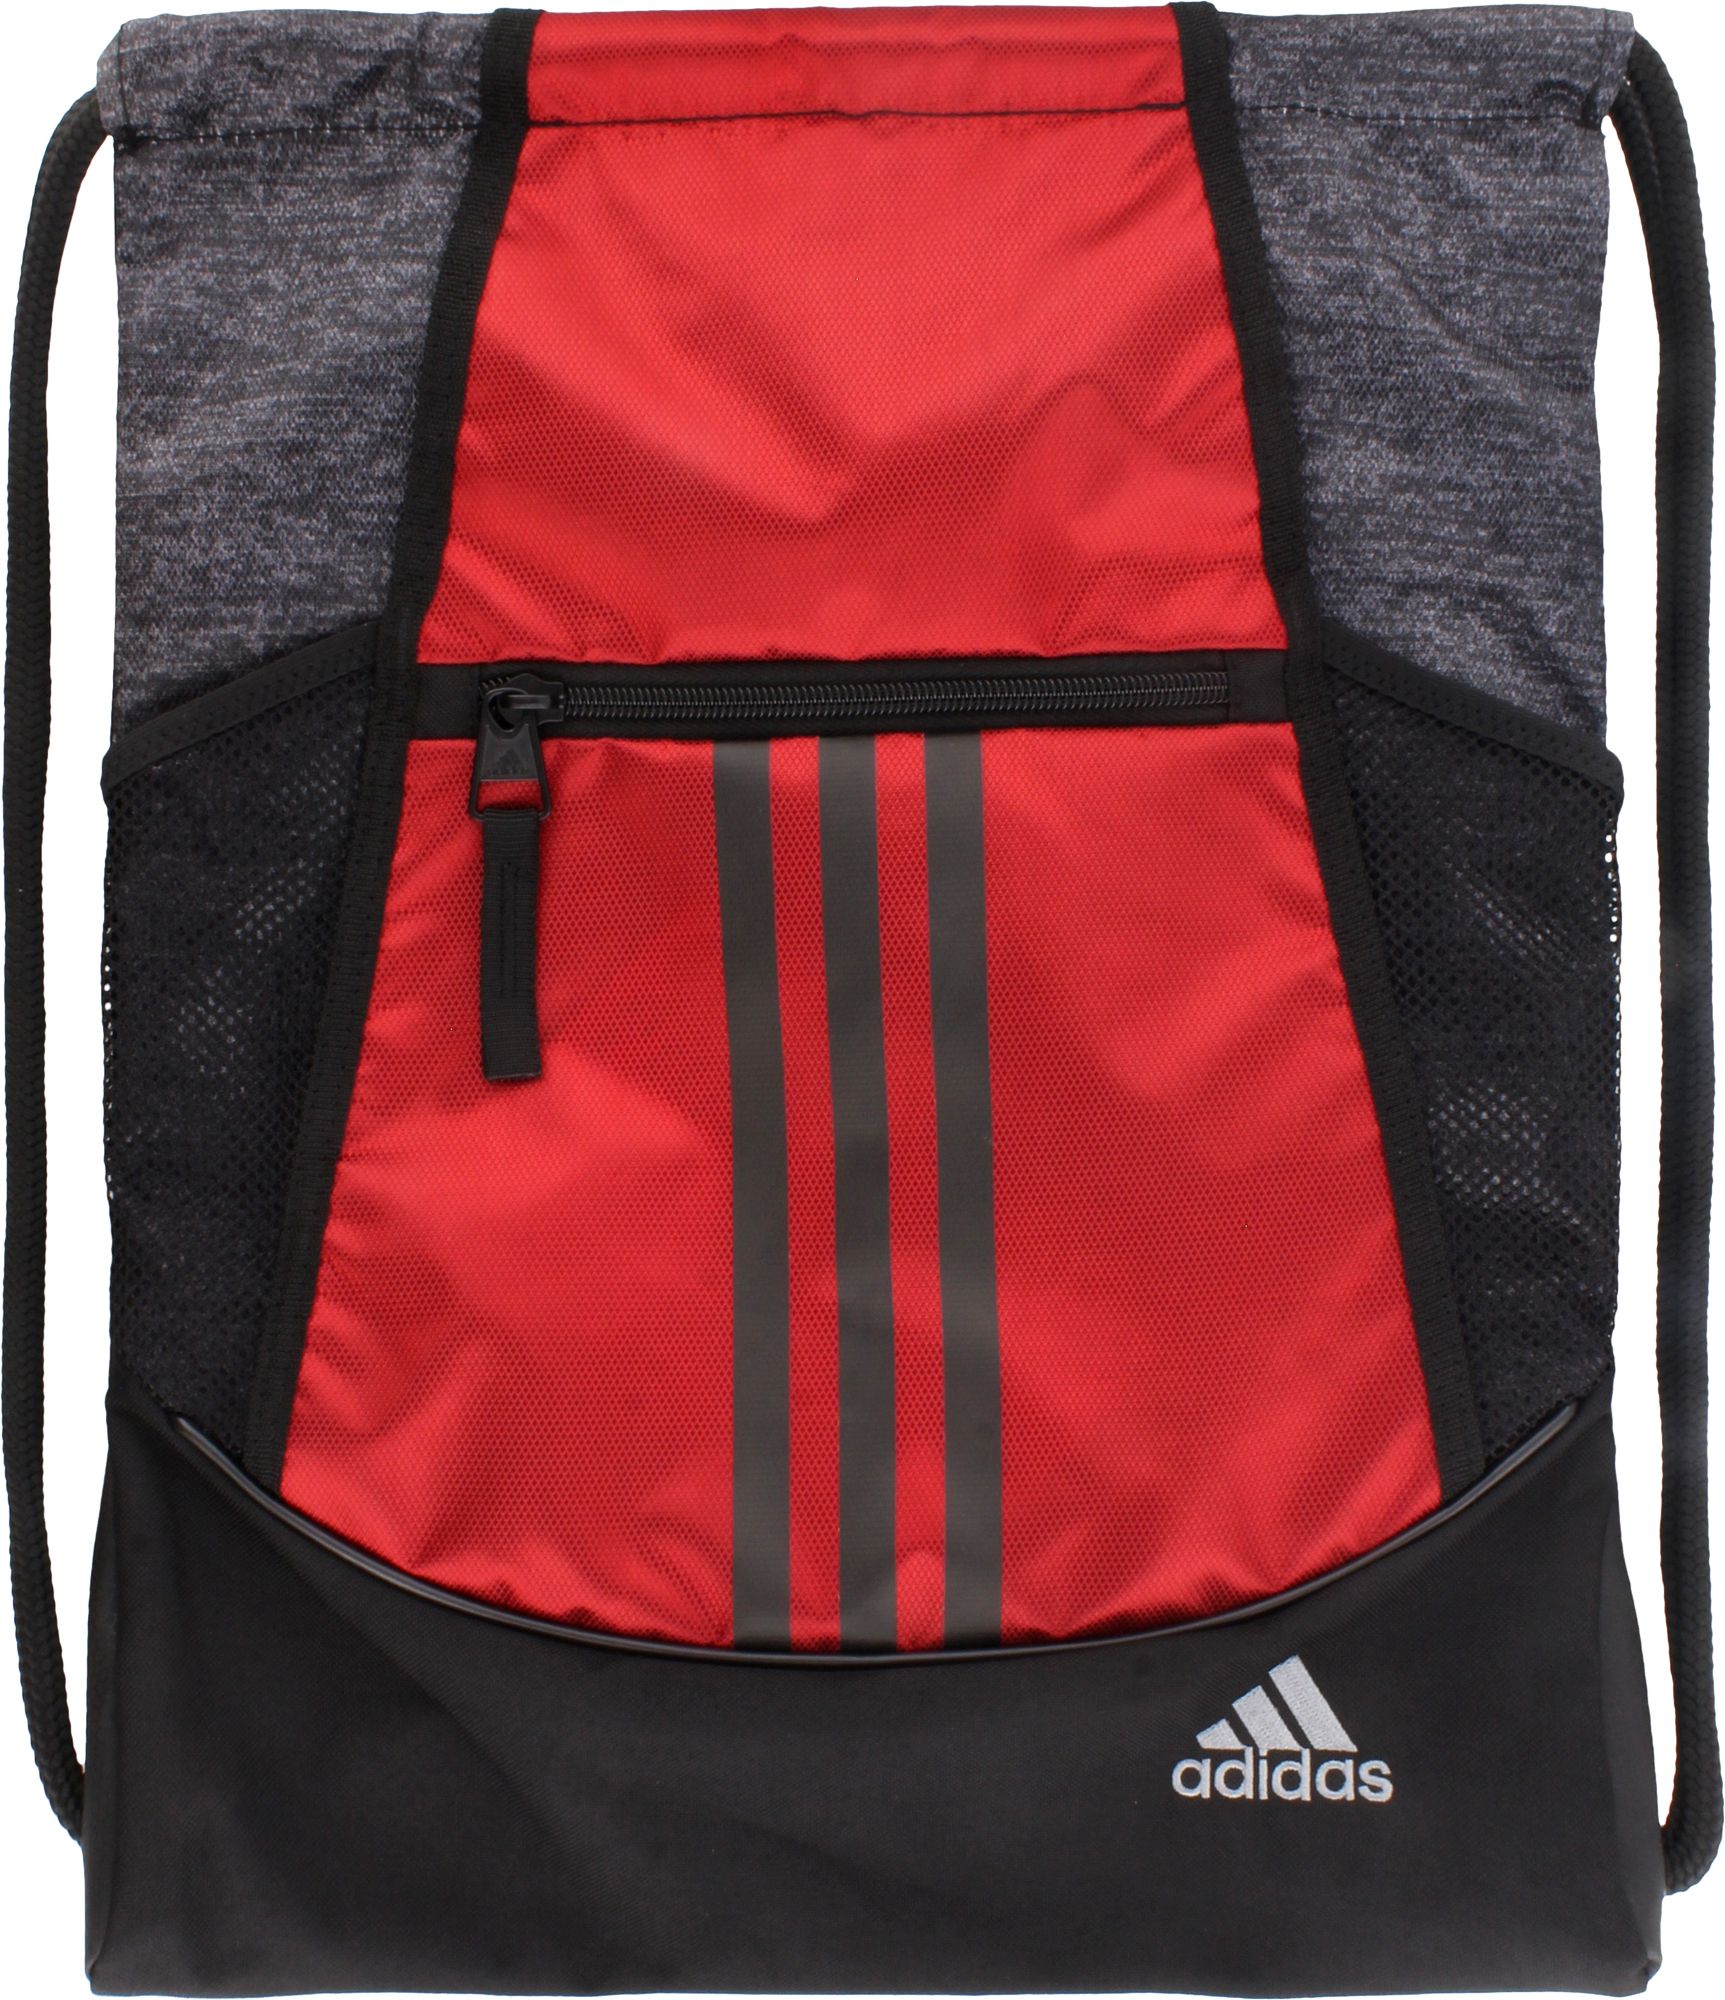 adidas alliance ii backpack